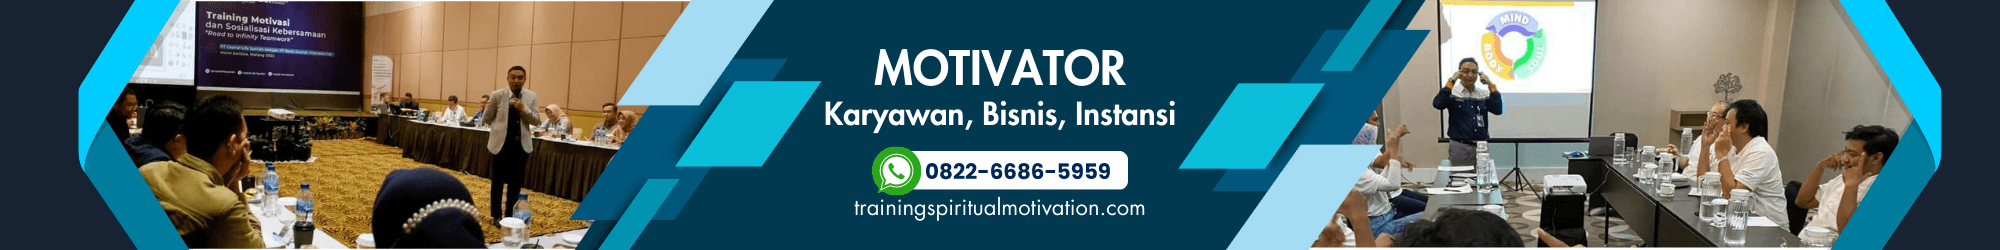 Motivator Karyawan, Bisnis, Instansi